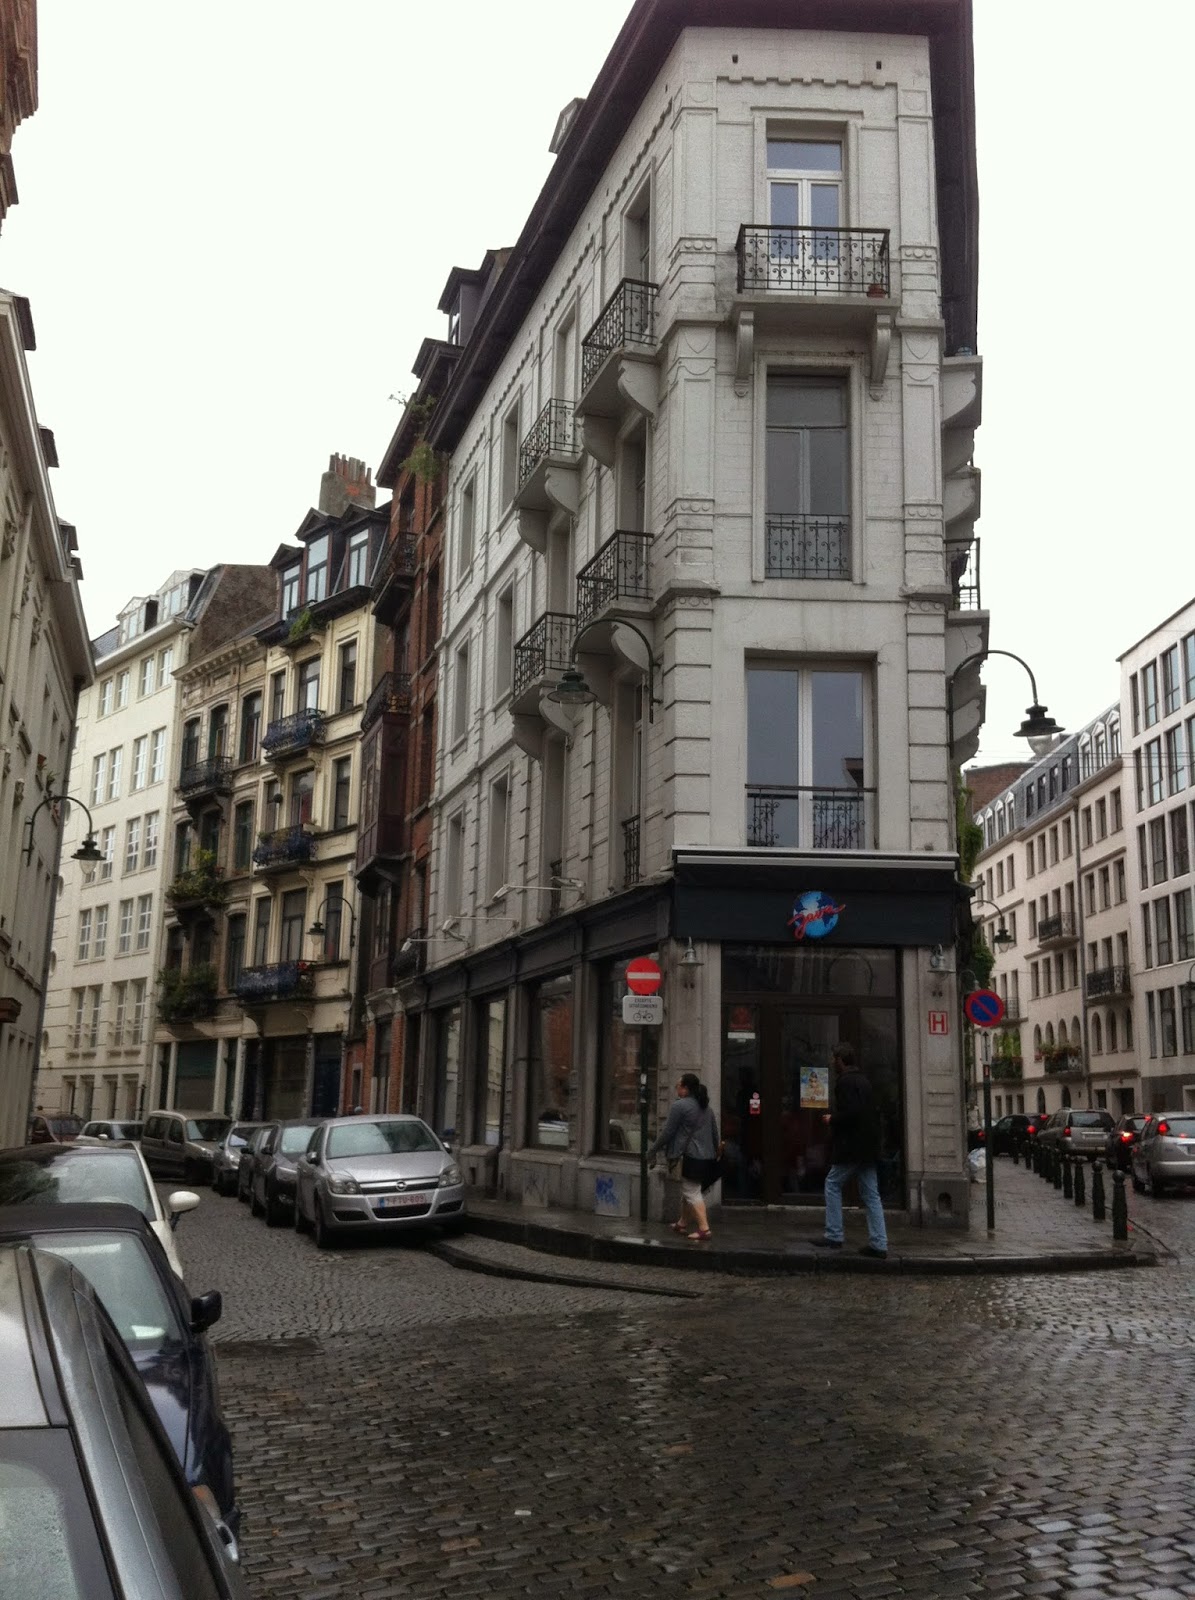 mi-diario-urbano-la-bruselizaci-n-brusselization-de-las-ciudades